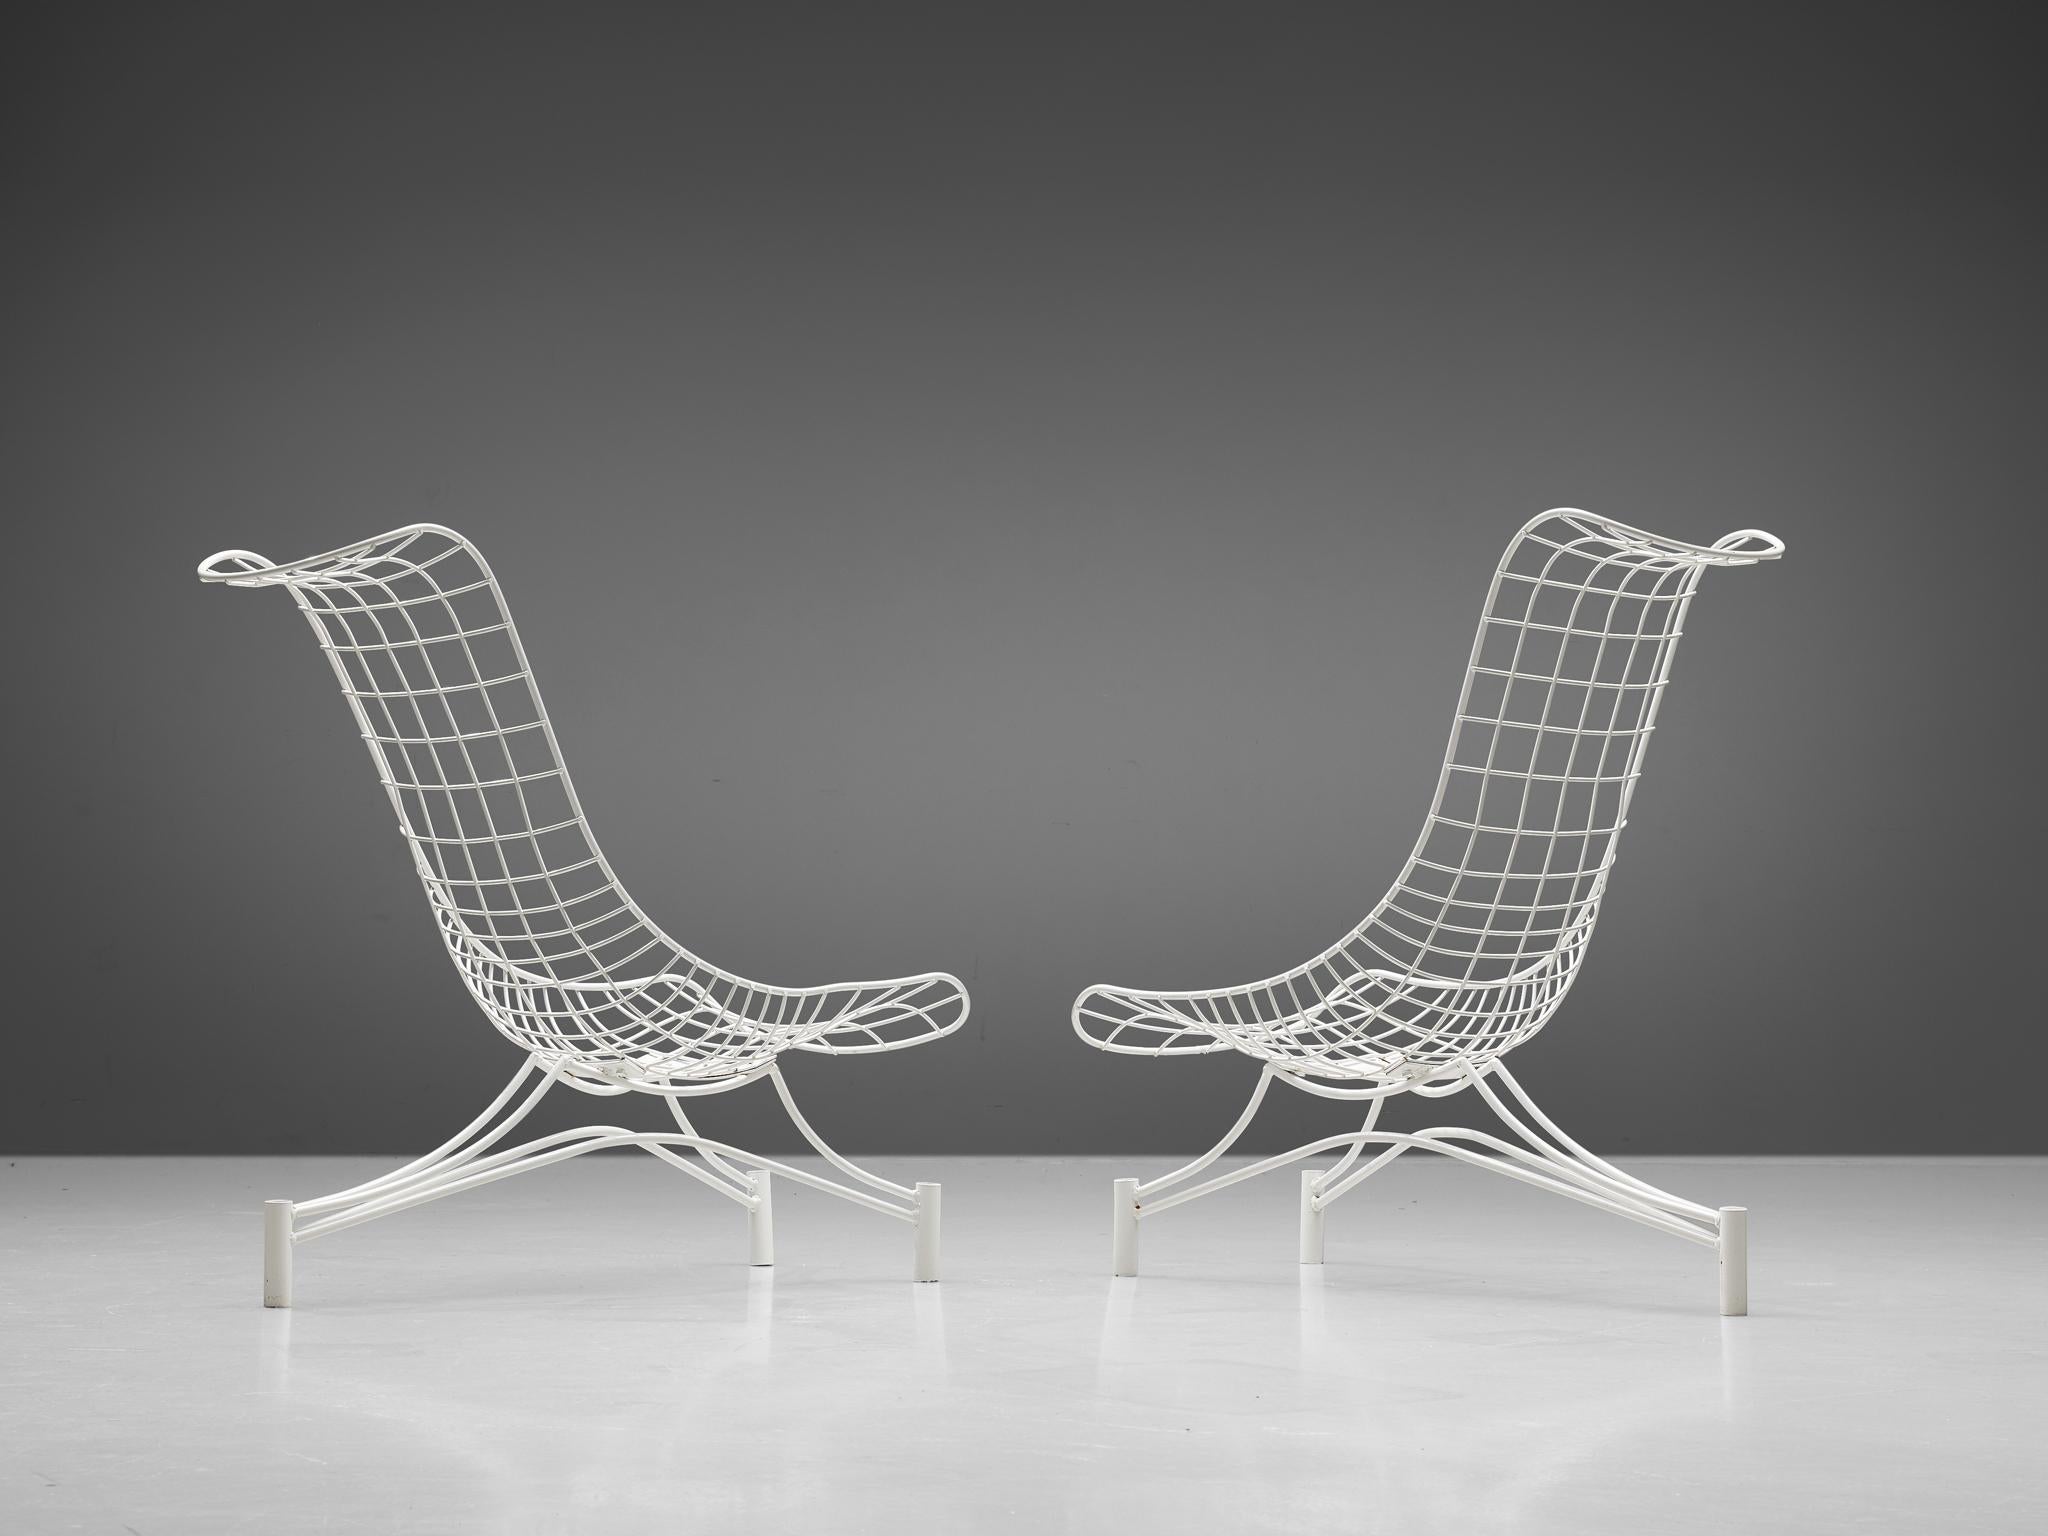 Vladimir Kagan, Paar 'Capricorn'-Sessel, lackiertes Metall, Vereinigte Staaten, um. 1958

Der Stuhl 'Capricorn' verkörpert eine großartige Konstruktion, die sowohl für den Innen- als auch für den Außenbereich geeignet ist, was ihn zu einem